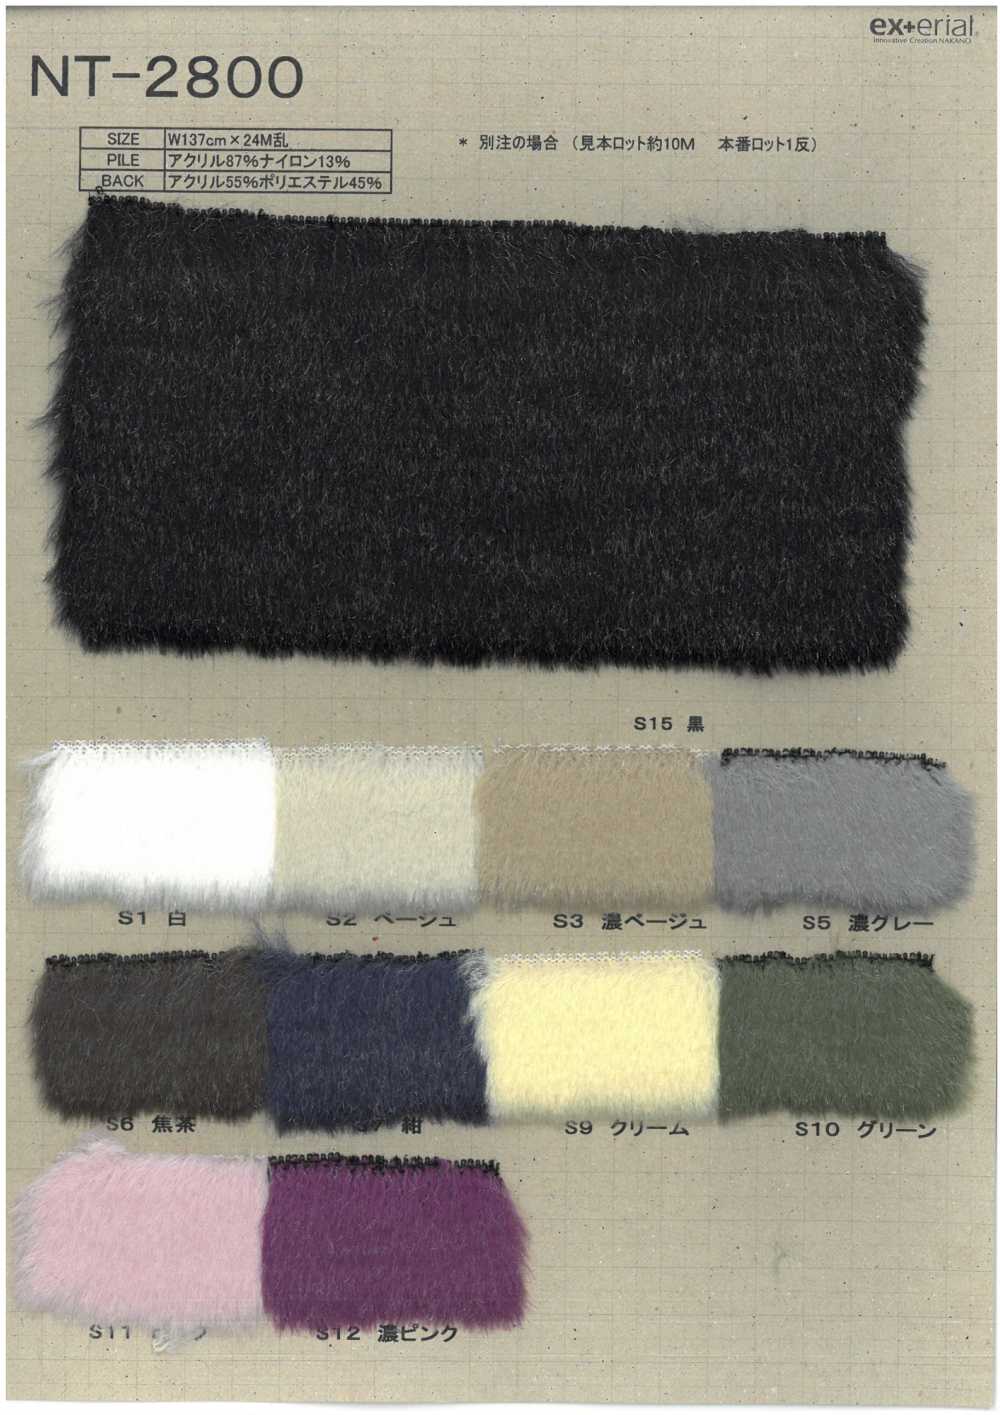 NT-2800 Fourrure Artisanale [Shearling Argenté][Fabrication De Textile] Industrie Du Jersey Nakano